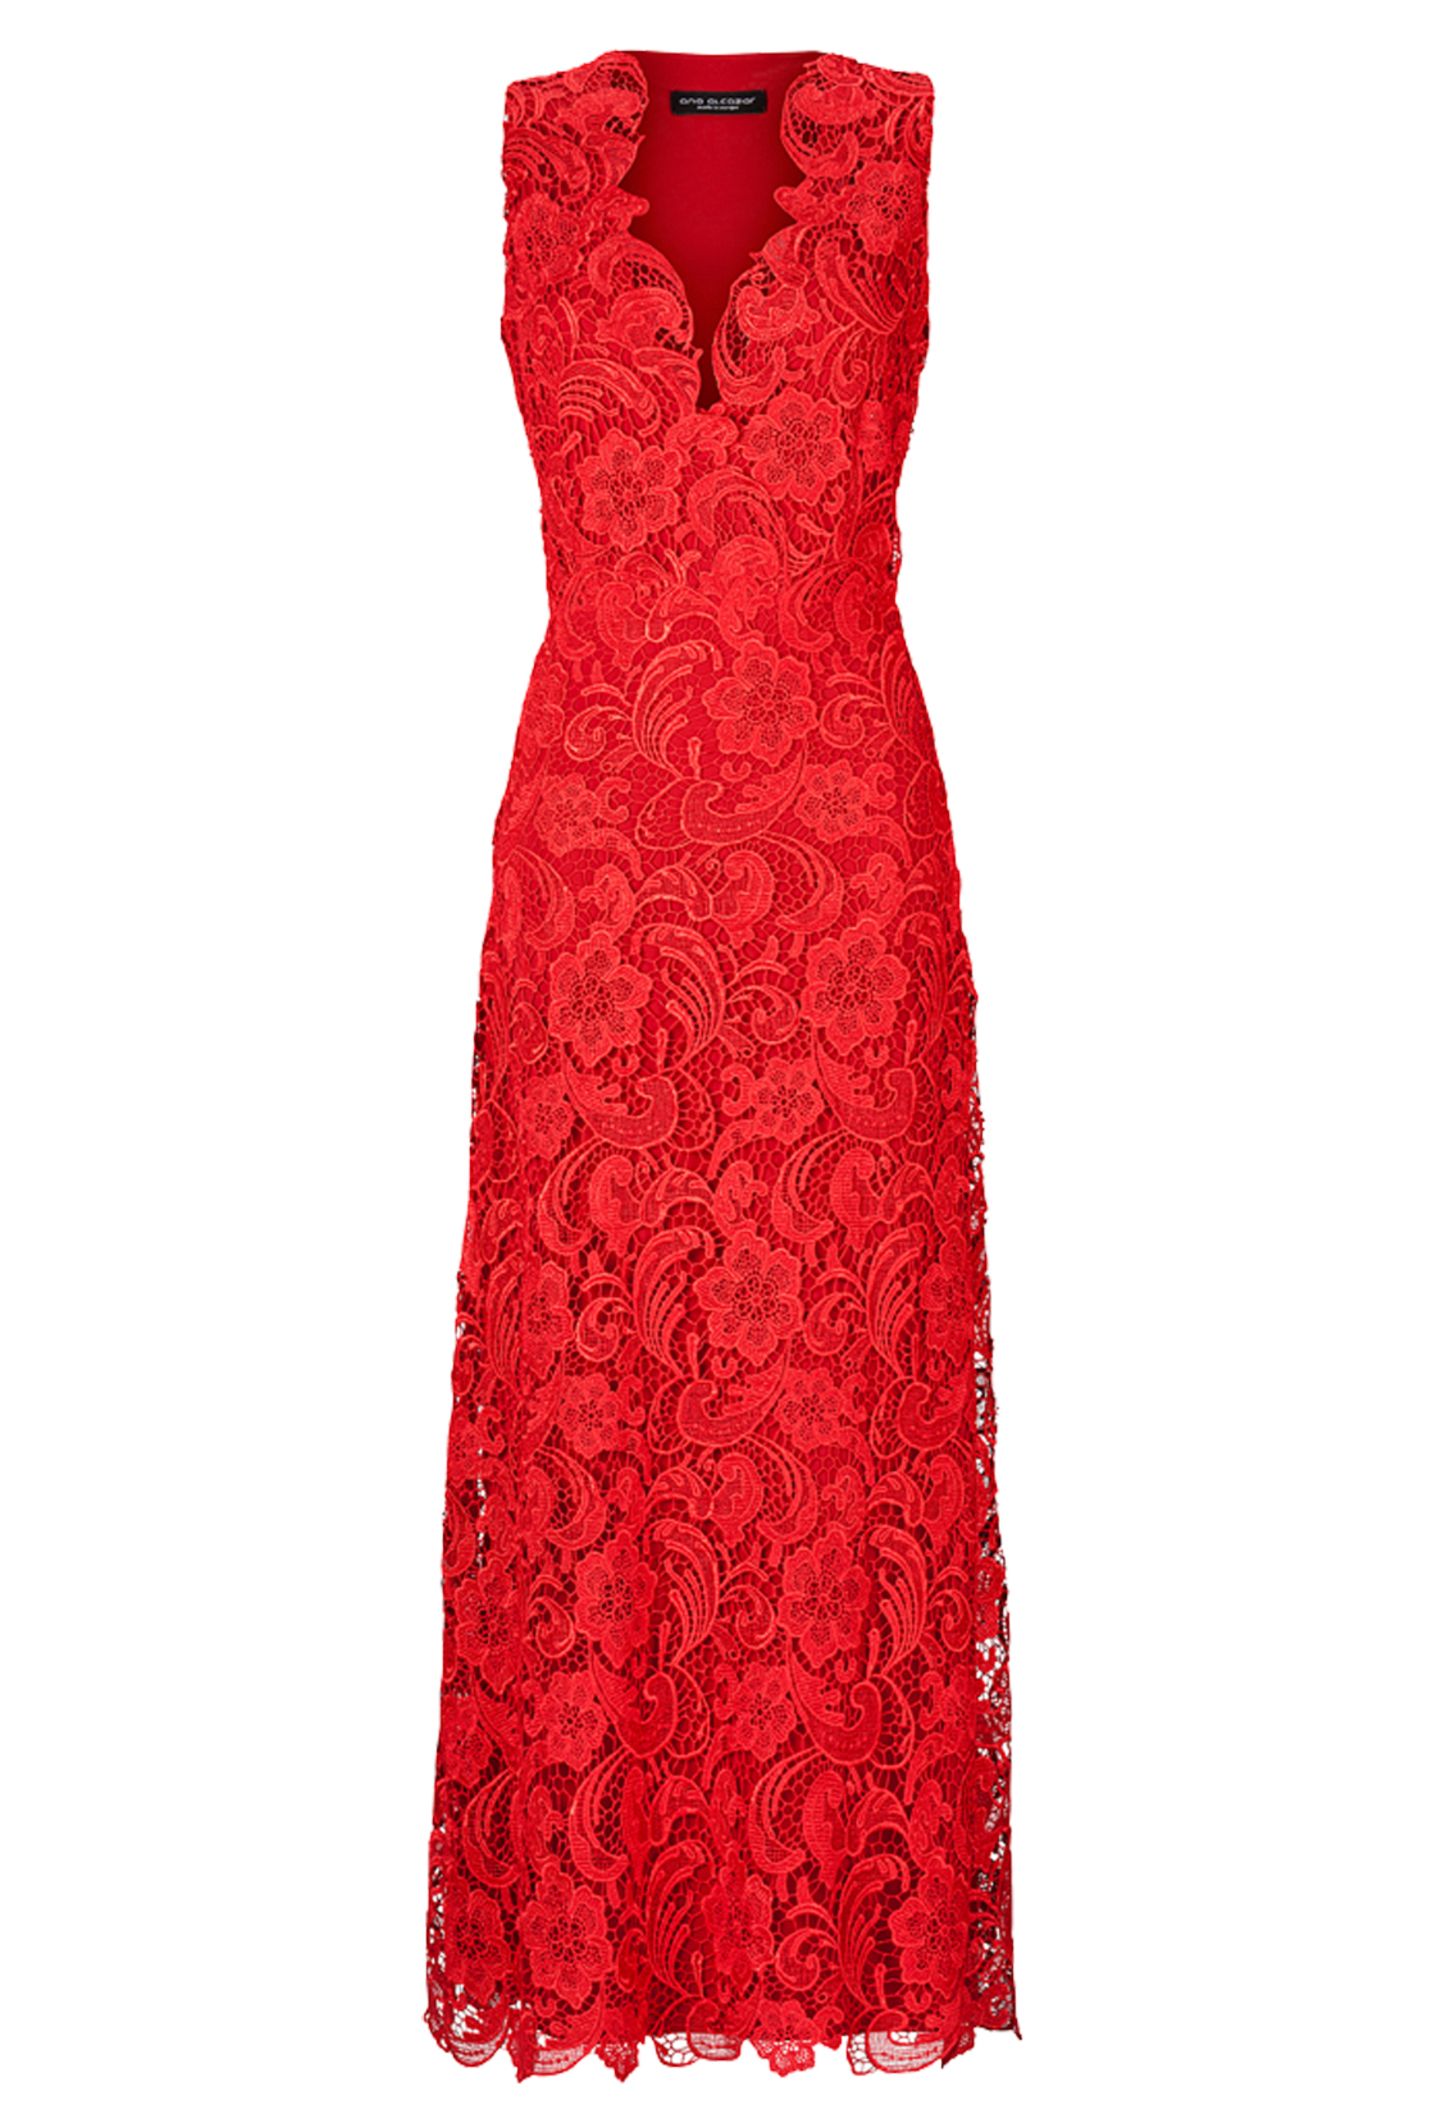 Spitzen-Silhouette! Glamouröses Kleid von Ana Alcazar, ca. 400 Euro